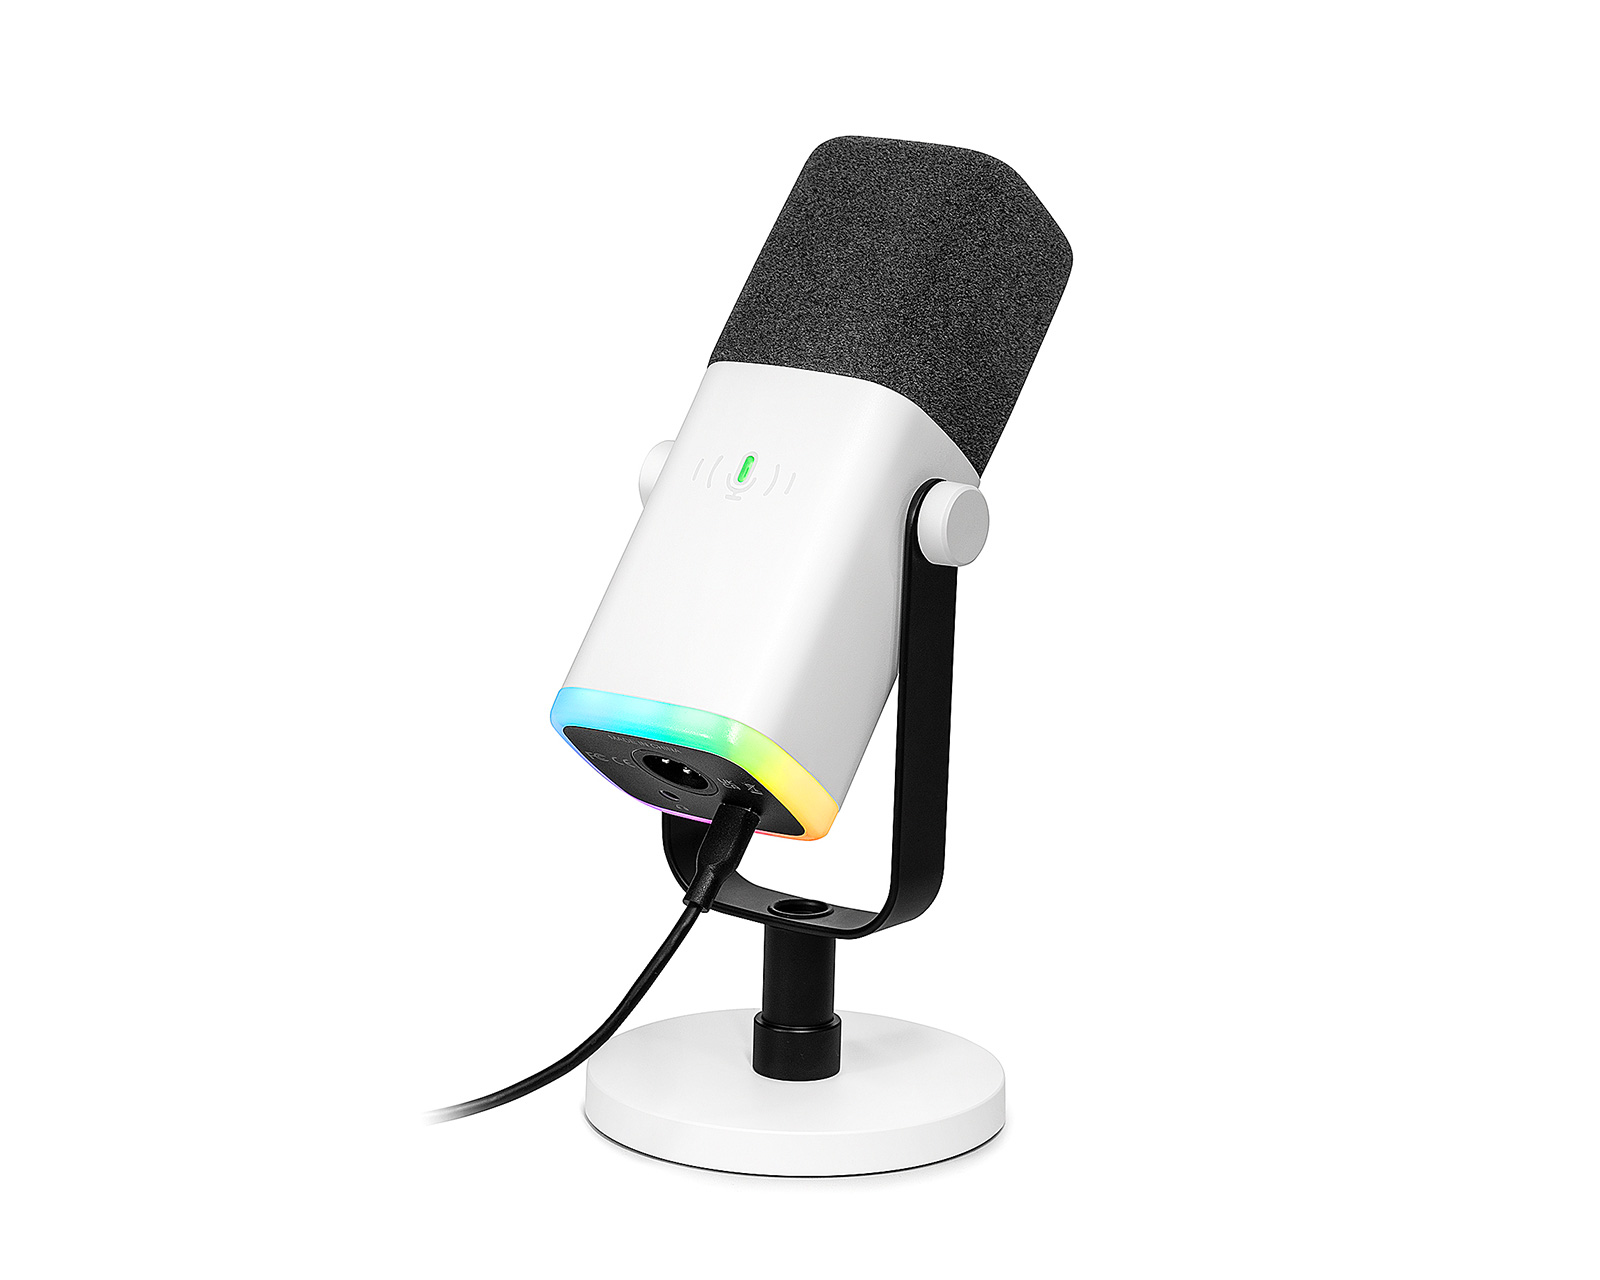  FIFINE XLR/USB Dynamic Microphone, Studio XLR Vocal